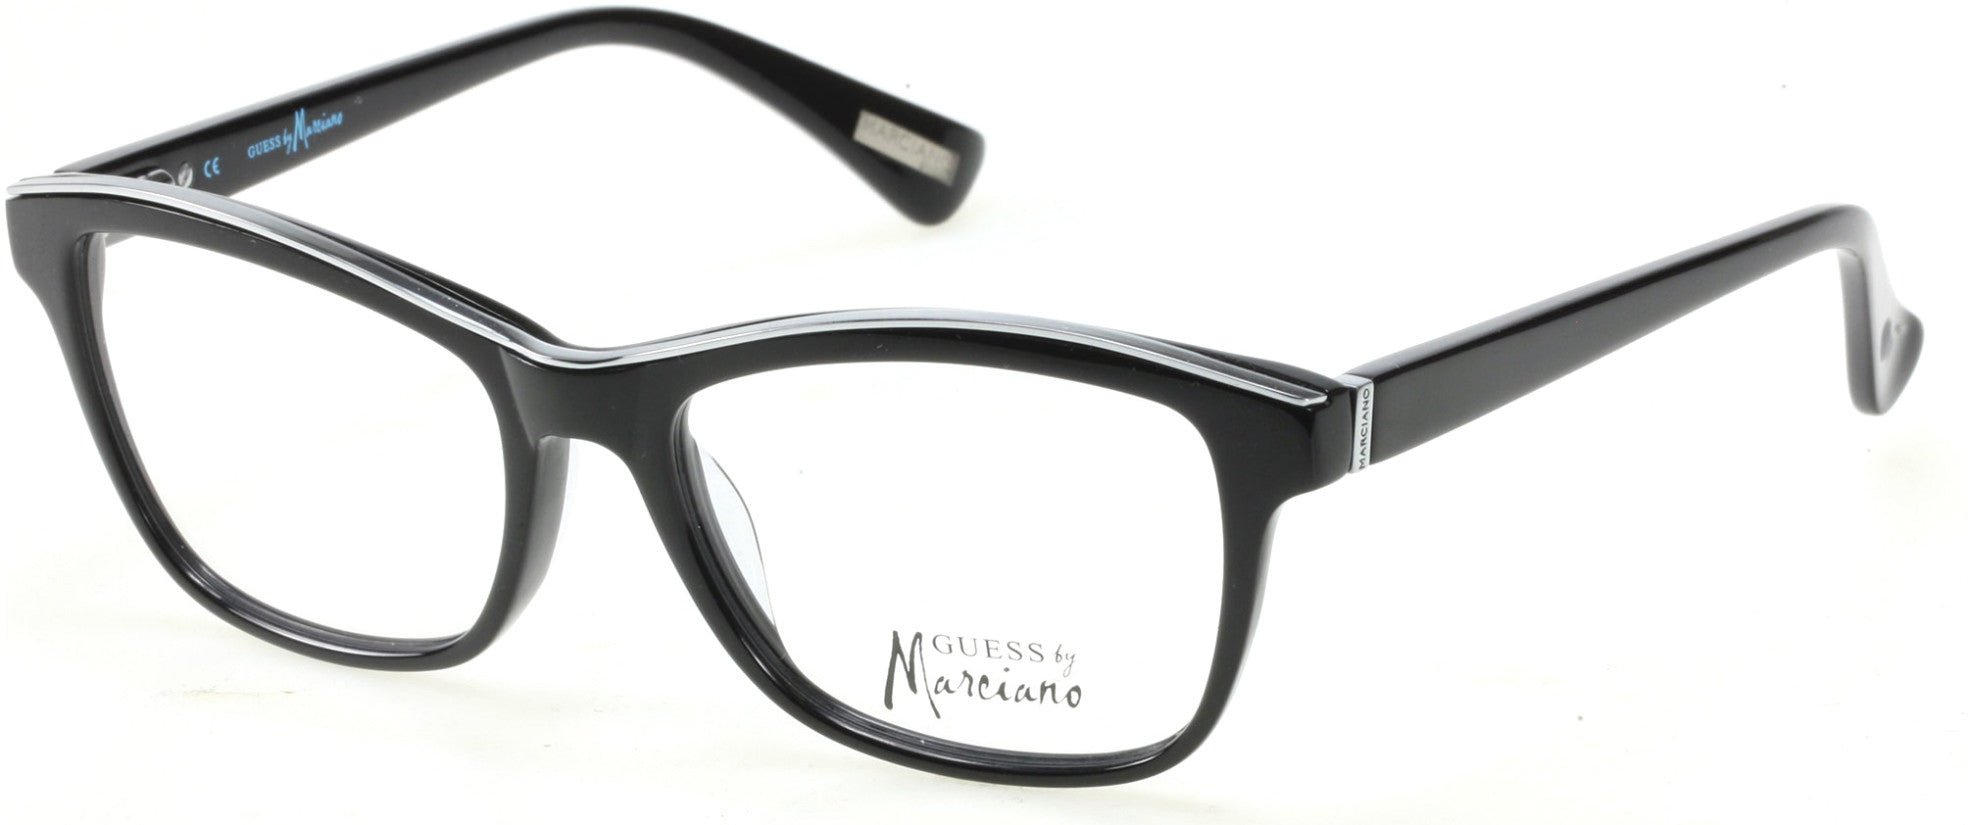 Guess By Marciano GM0246 Eyeglasses B84-B84 - Black